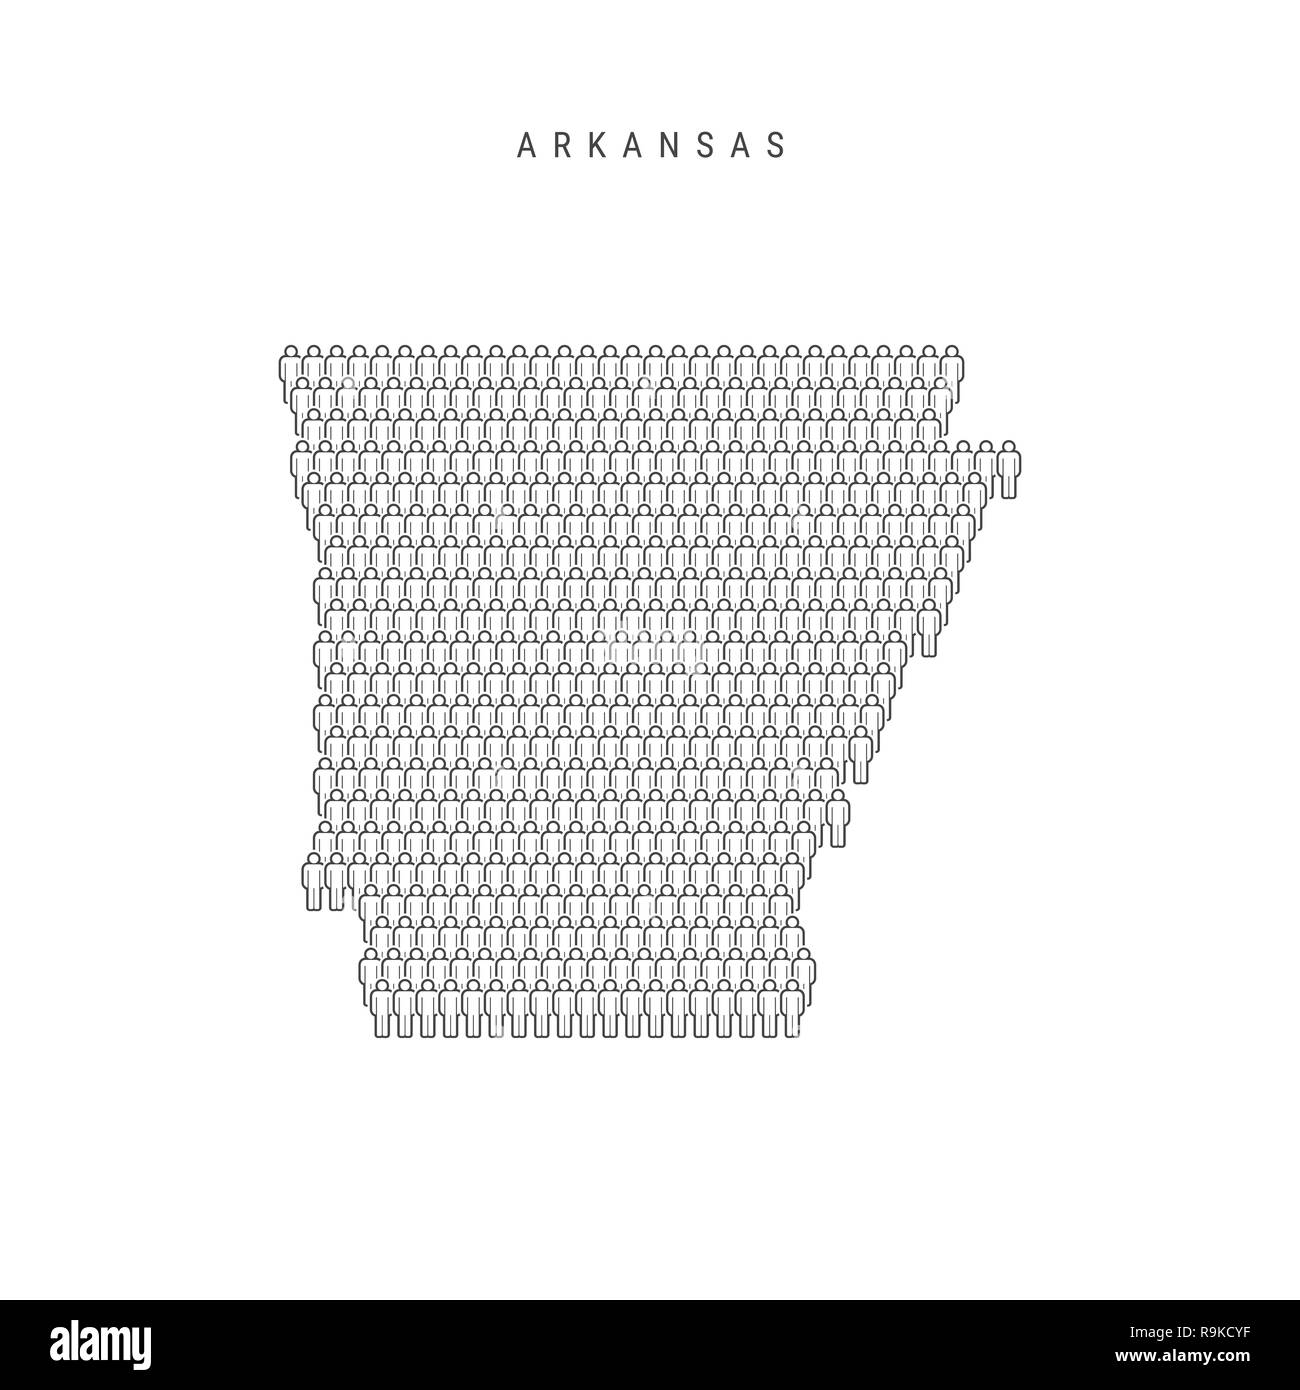 Leute Karte von Arkansas, US-Staat. Stilisierte Silhouette, Leute in der Form einer Karte von Arkansas. Arkansas Bevölkerung. Abbildung isoliert auf W Stockfoto